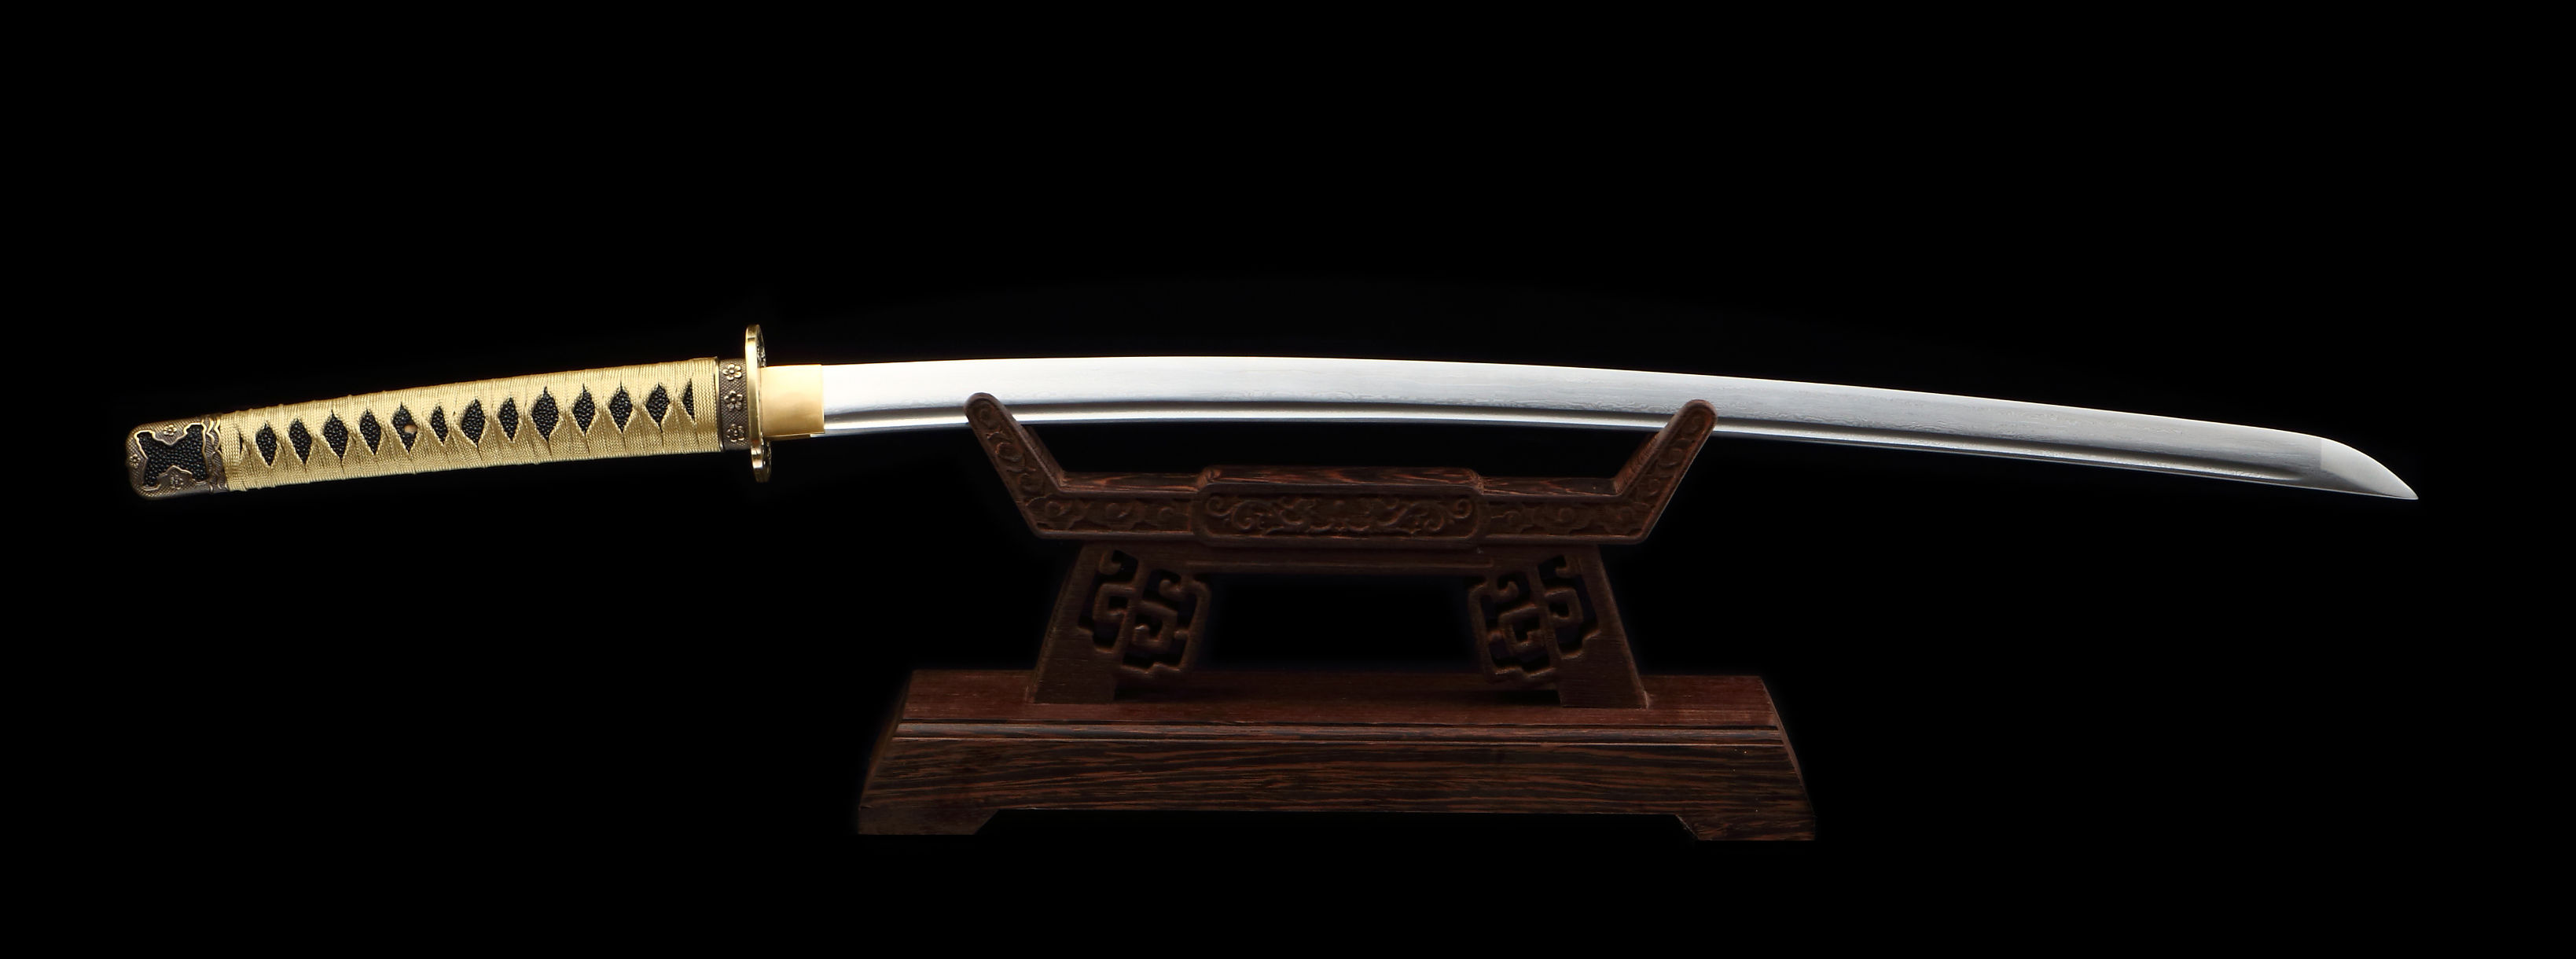 日本刀至今成为世界名刃之一,这几个阶段功不可没?